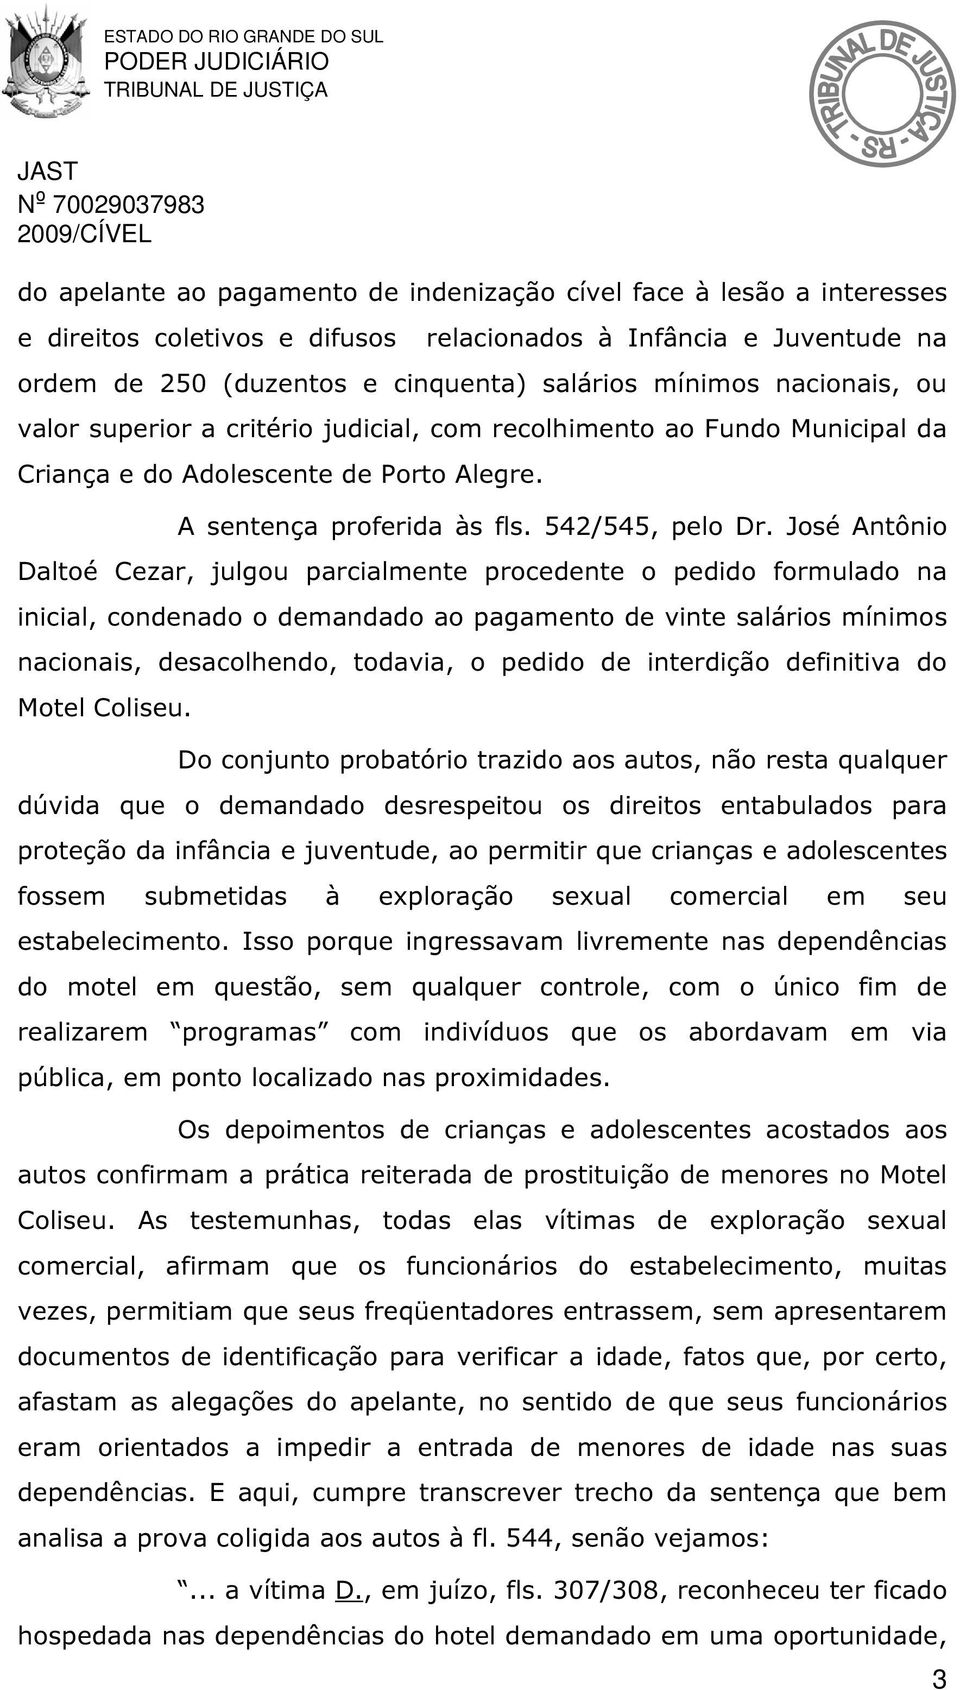 José Antônio Daltoé Cezar, julgou parcialmente procedente o pedido formulado na inicial, condenado o demandado ao pagamento de vinte salários mínimos nacionais, desacolhendo, todavia, o pedido de